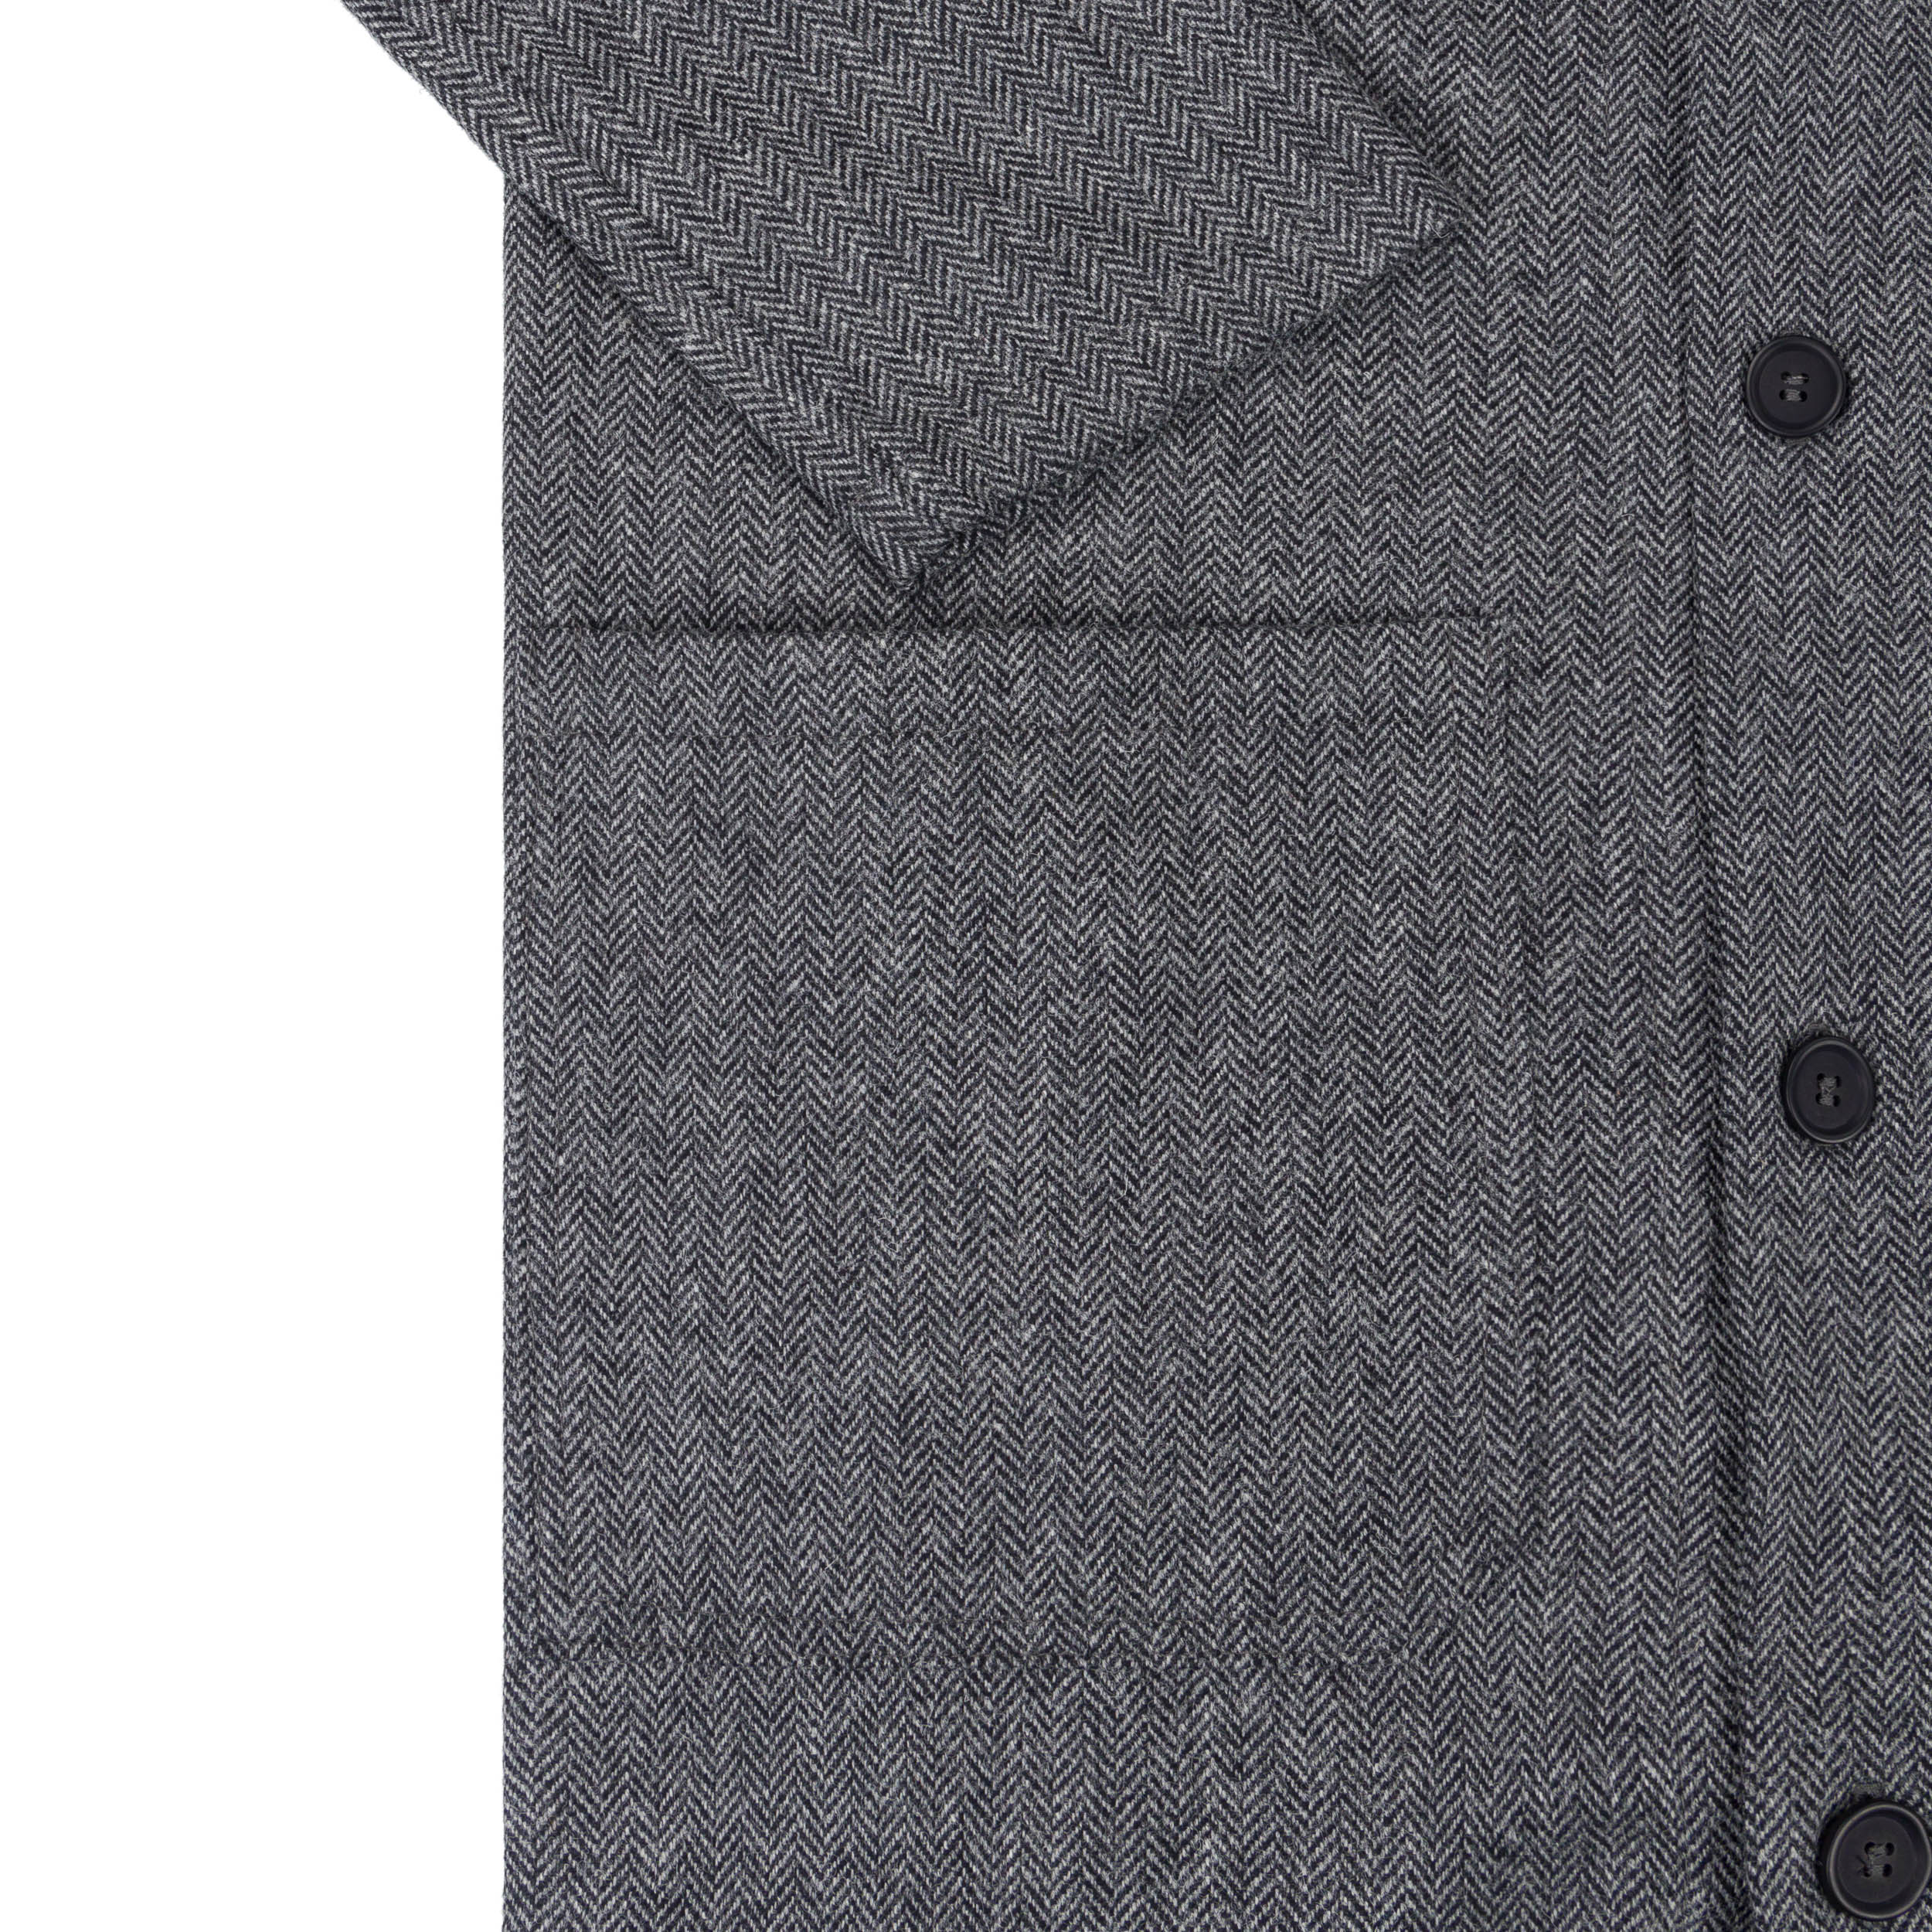 Wool Coat in Black and White Herringbone